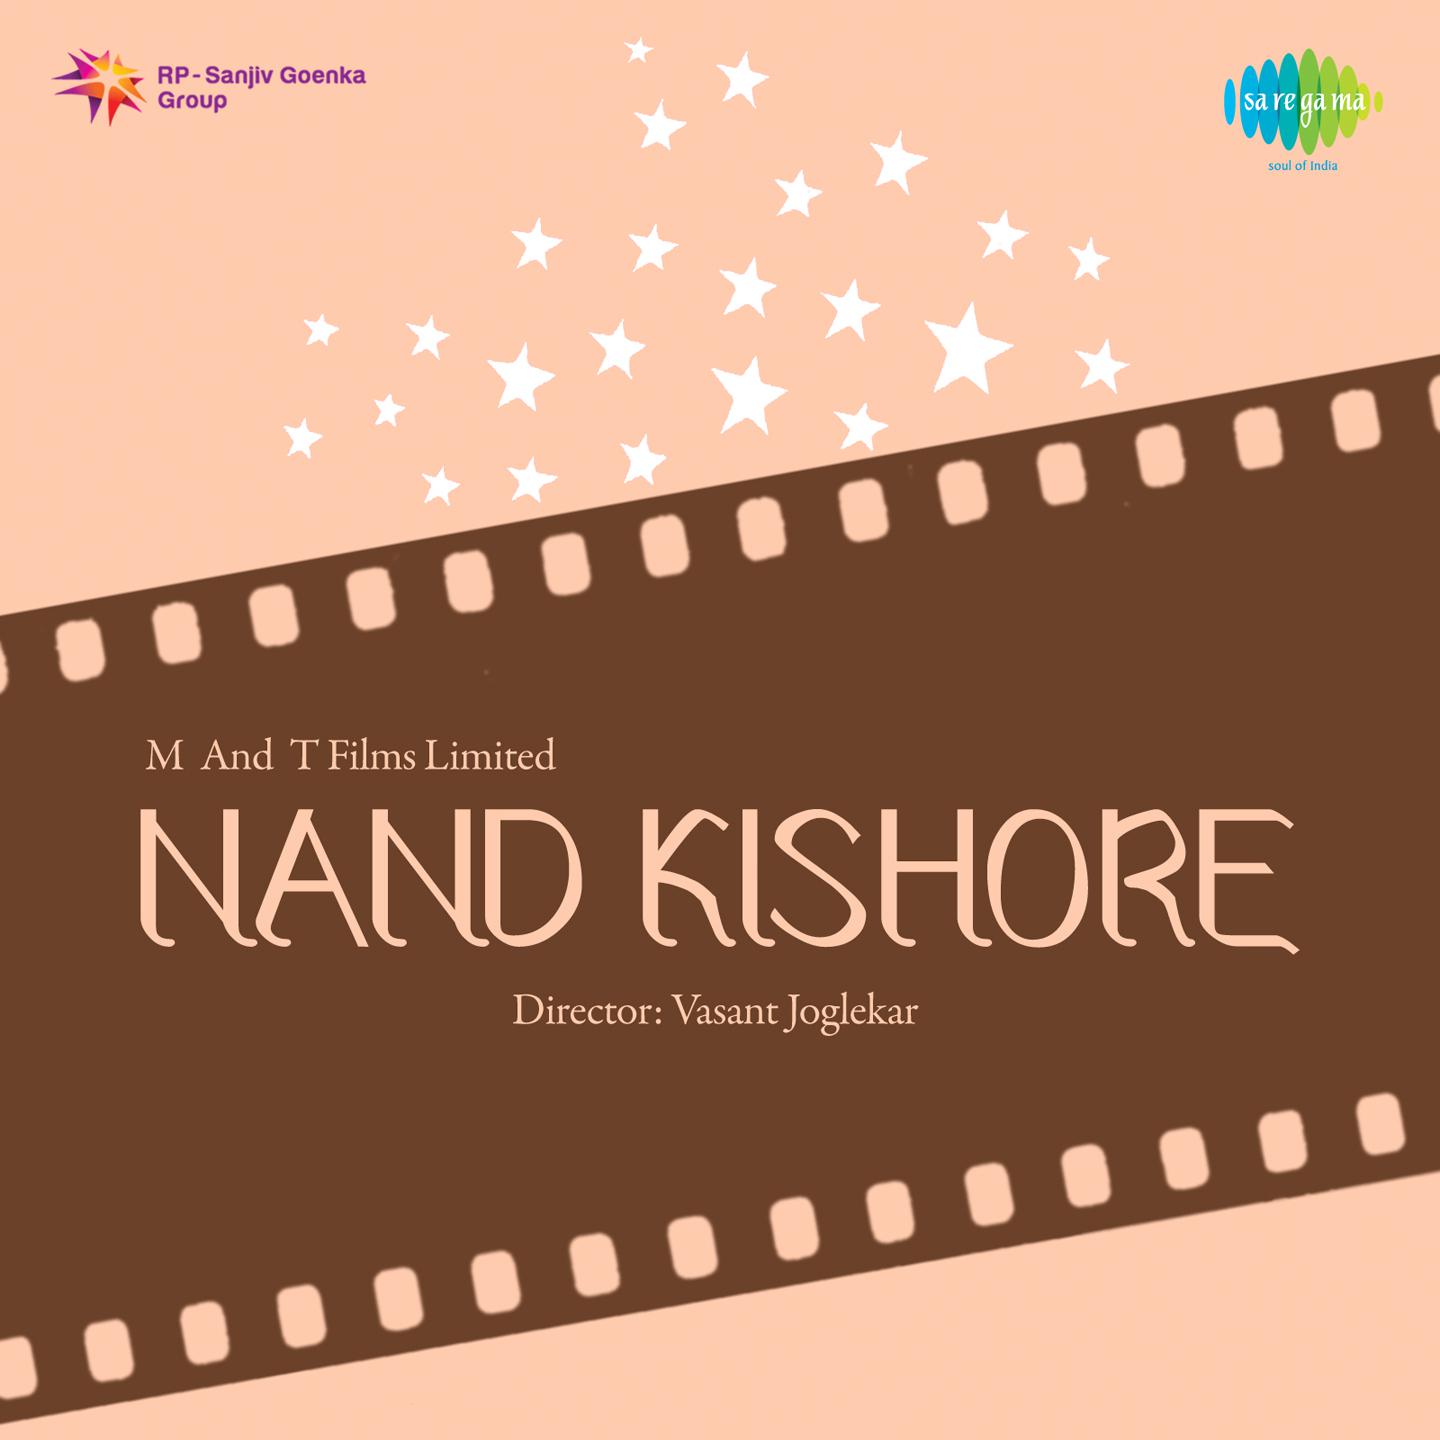 Nand Kishore